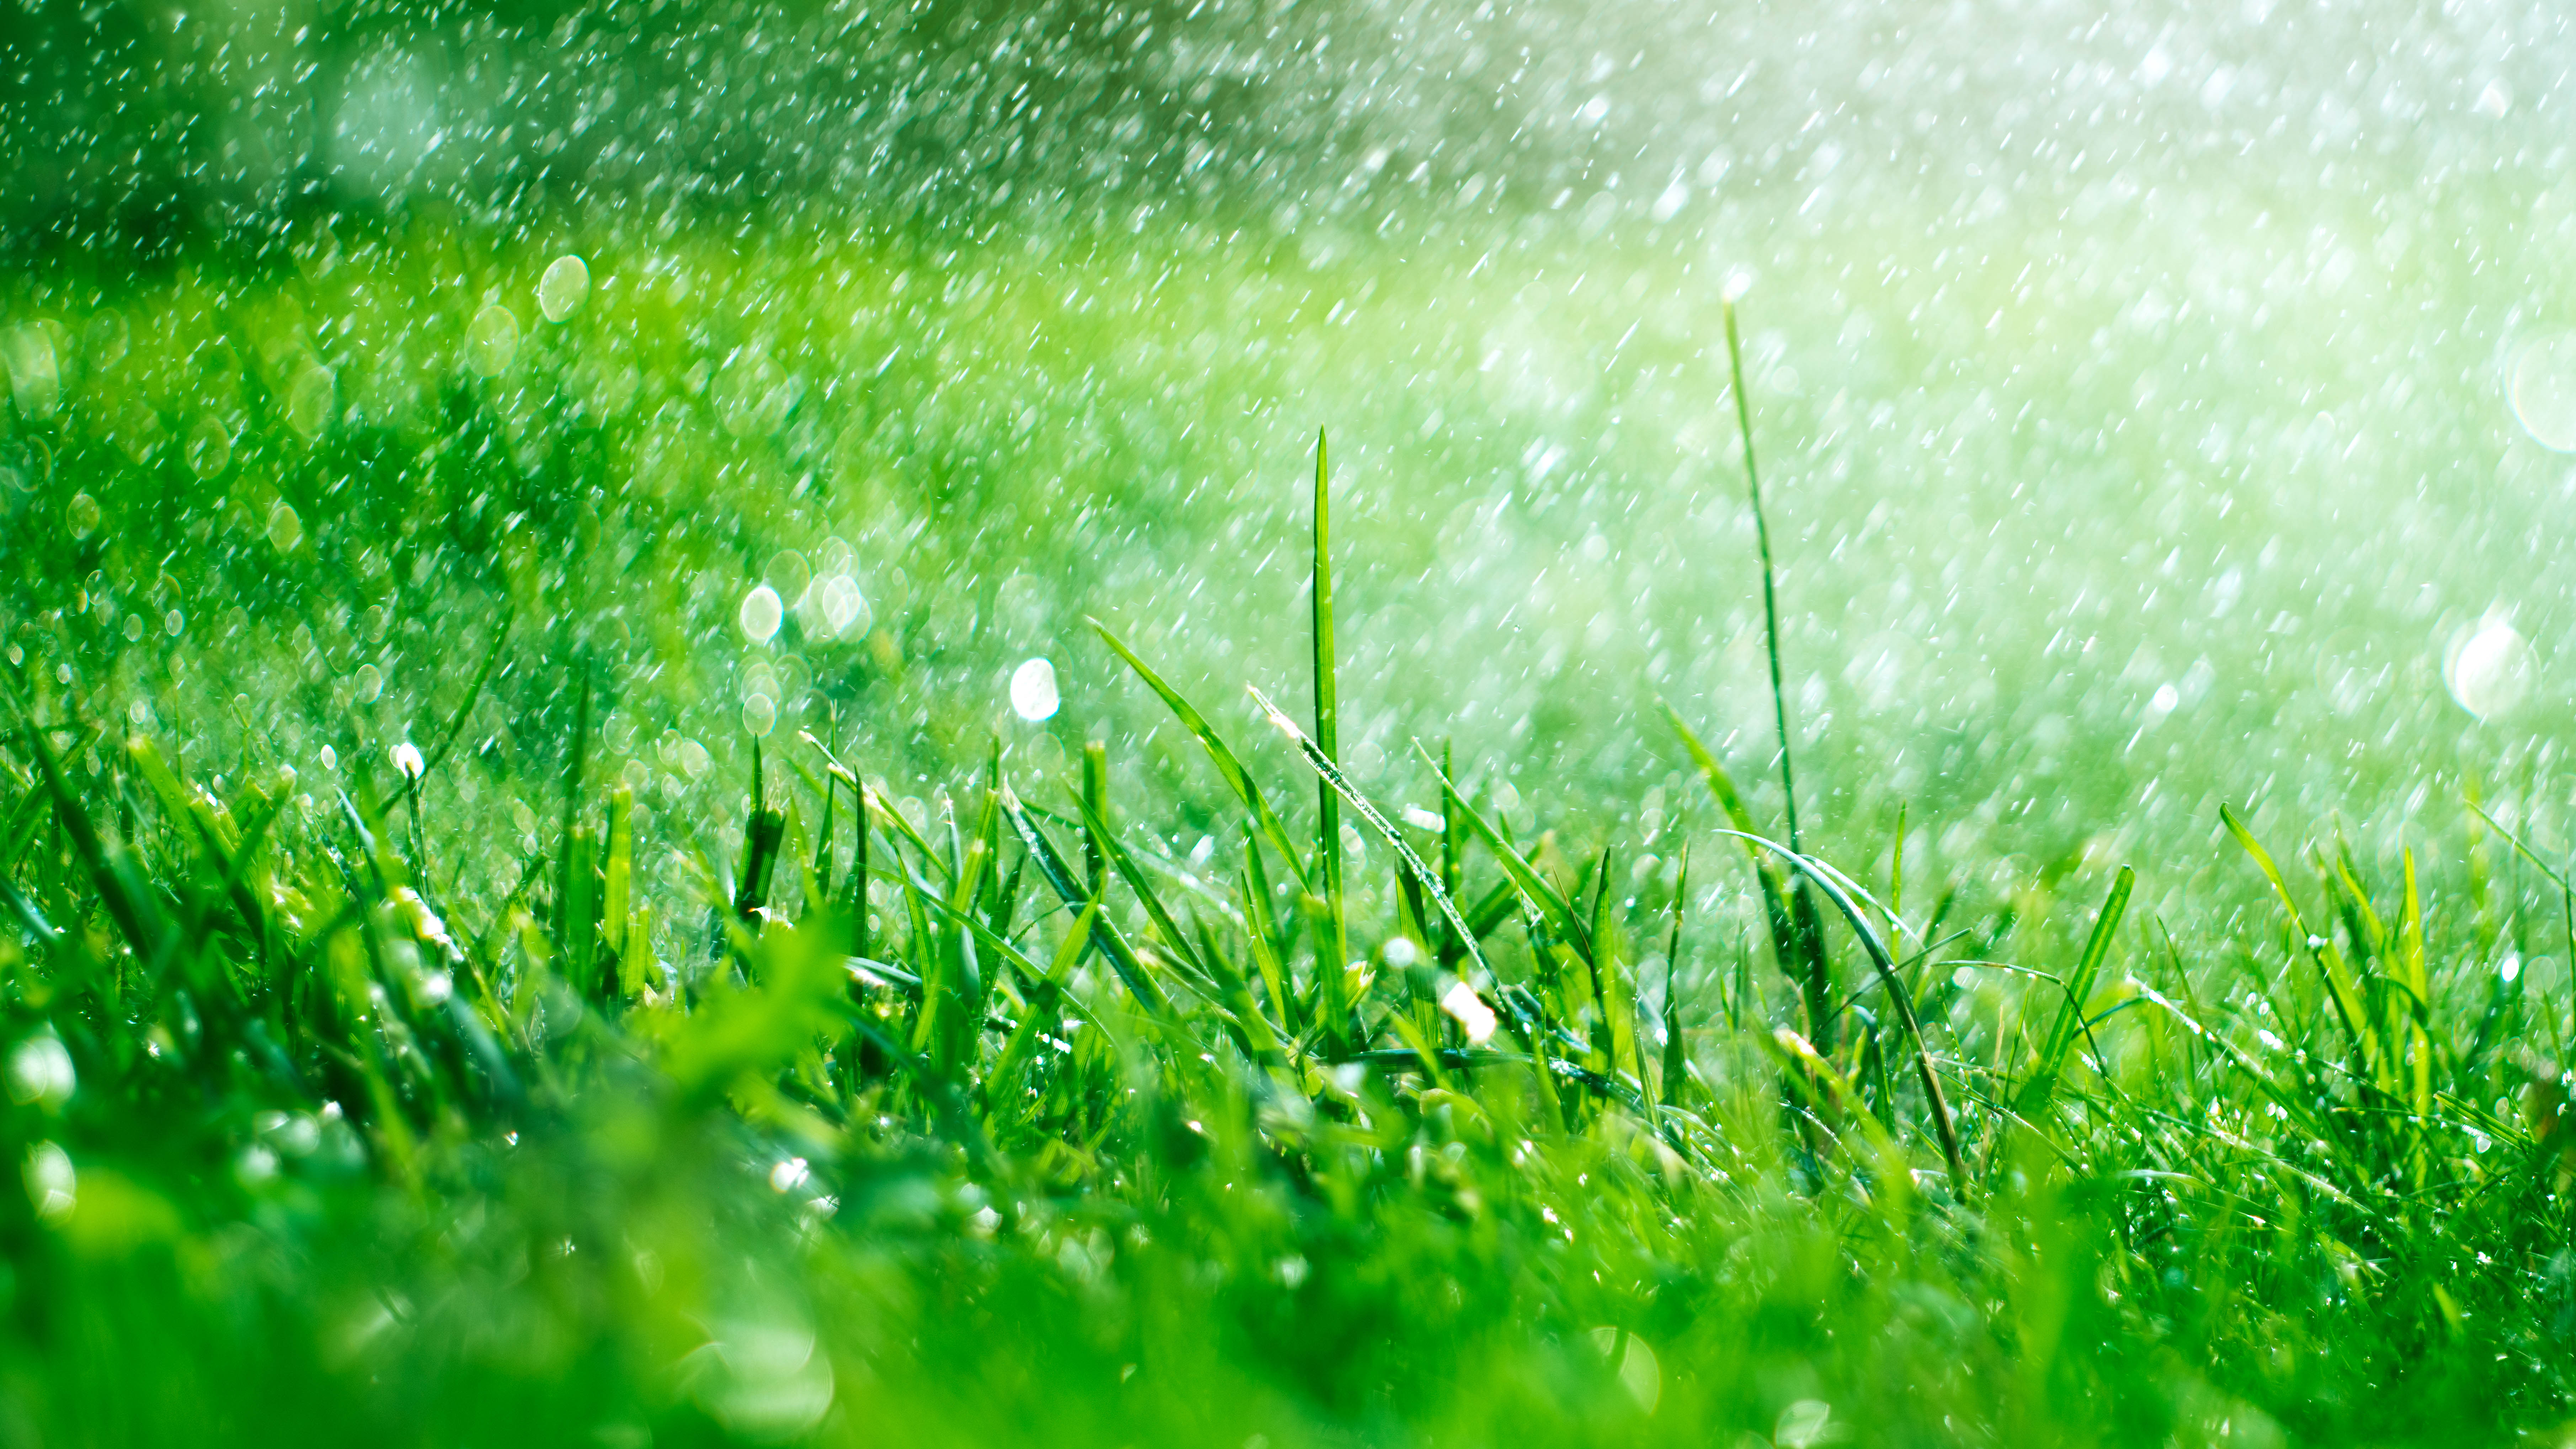 Дождь падает на траву